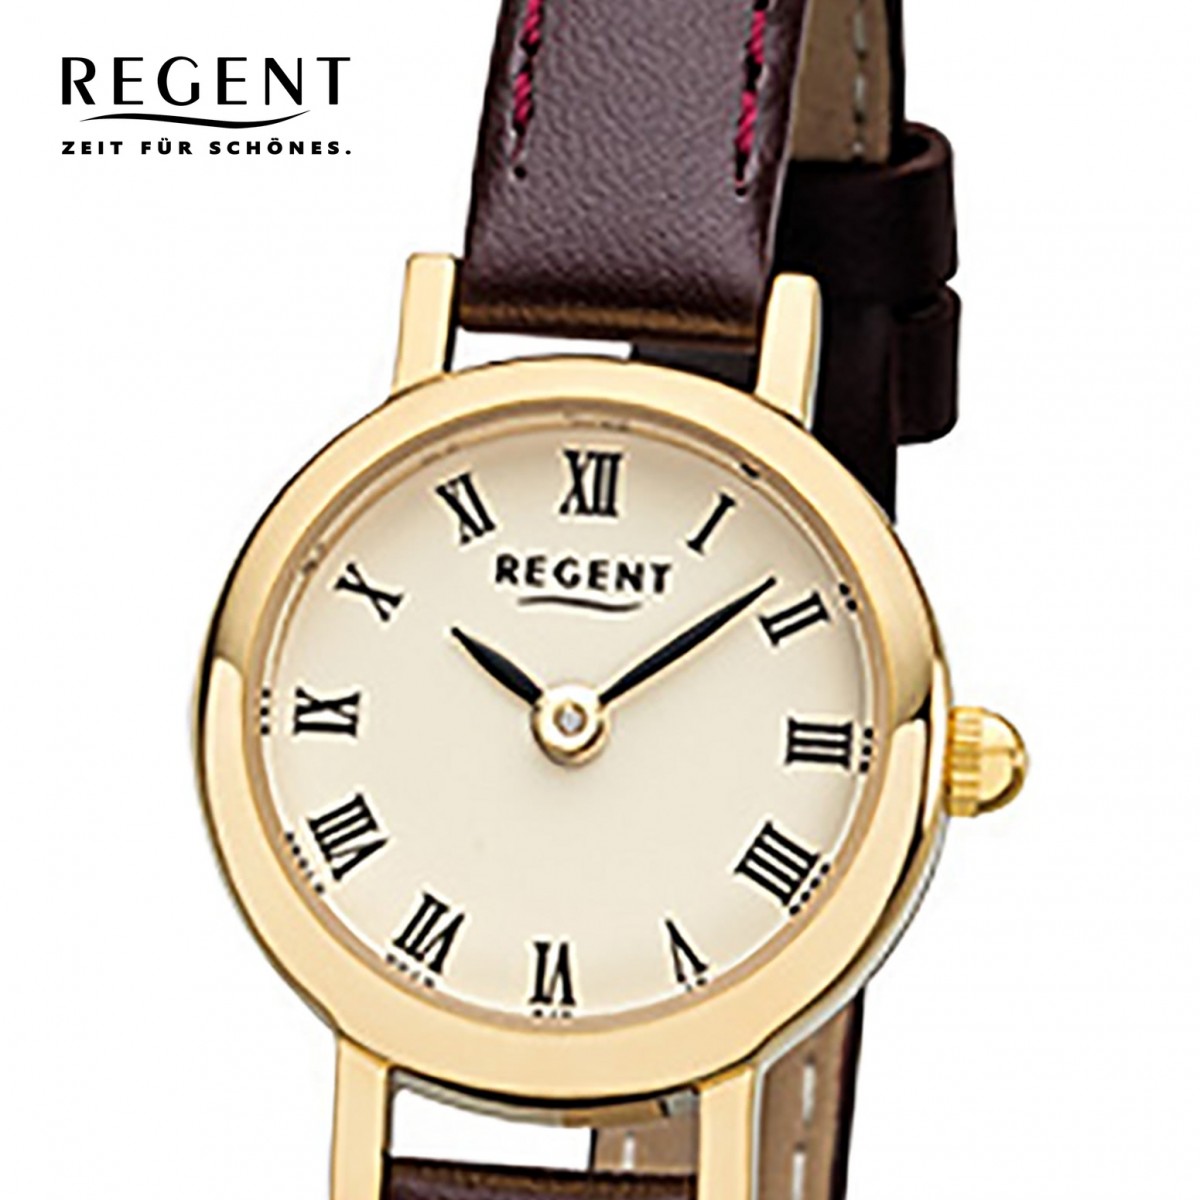 Damen-Armbanduhr Mini F-978 Regent Quarz-Uhr Leder-Armband URF978 braun